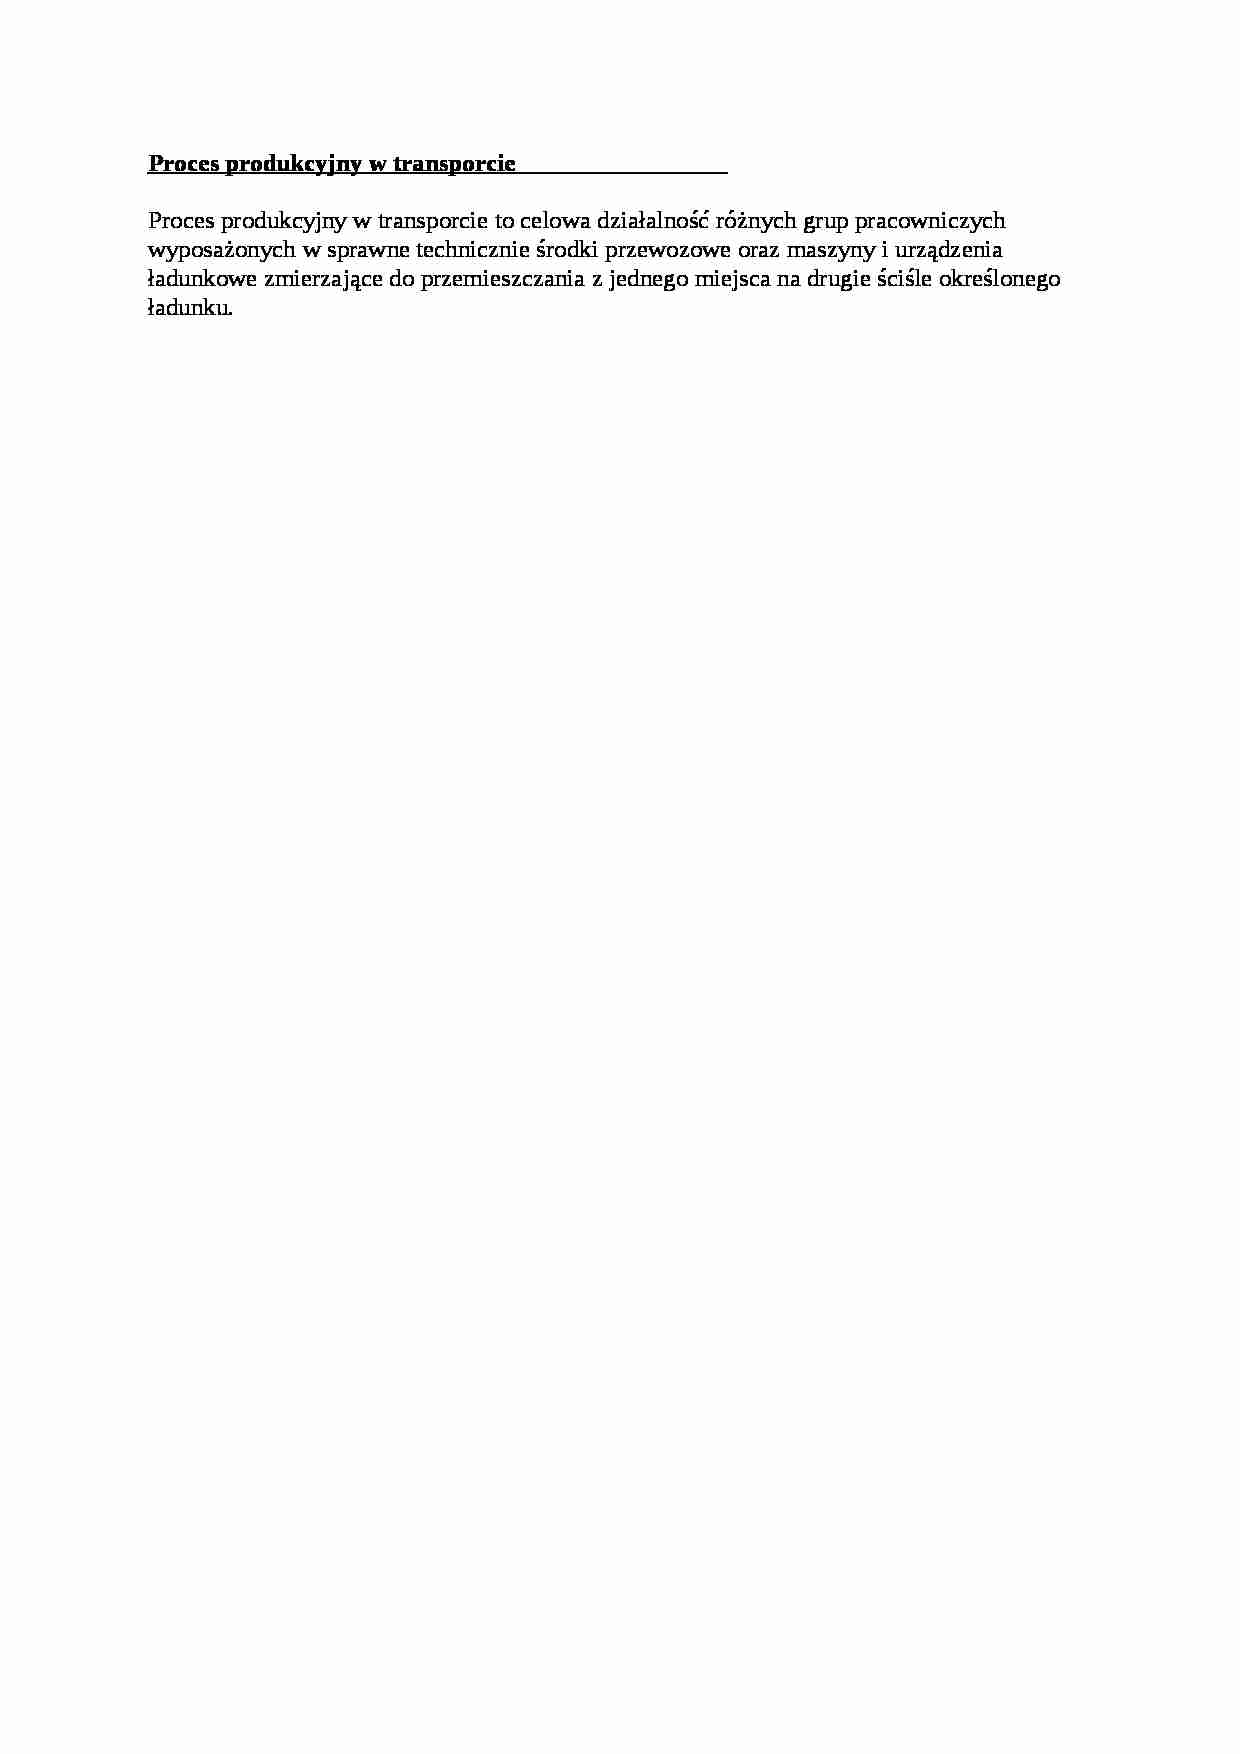 Proces produkcyjny w transporcie - opracowanie - strona 1